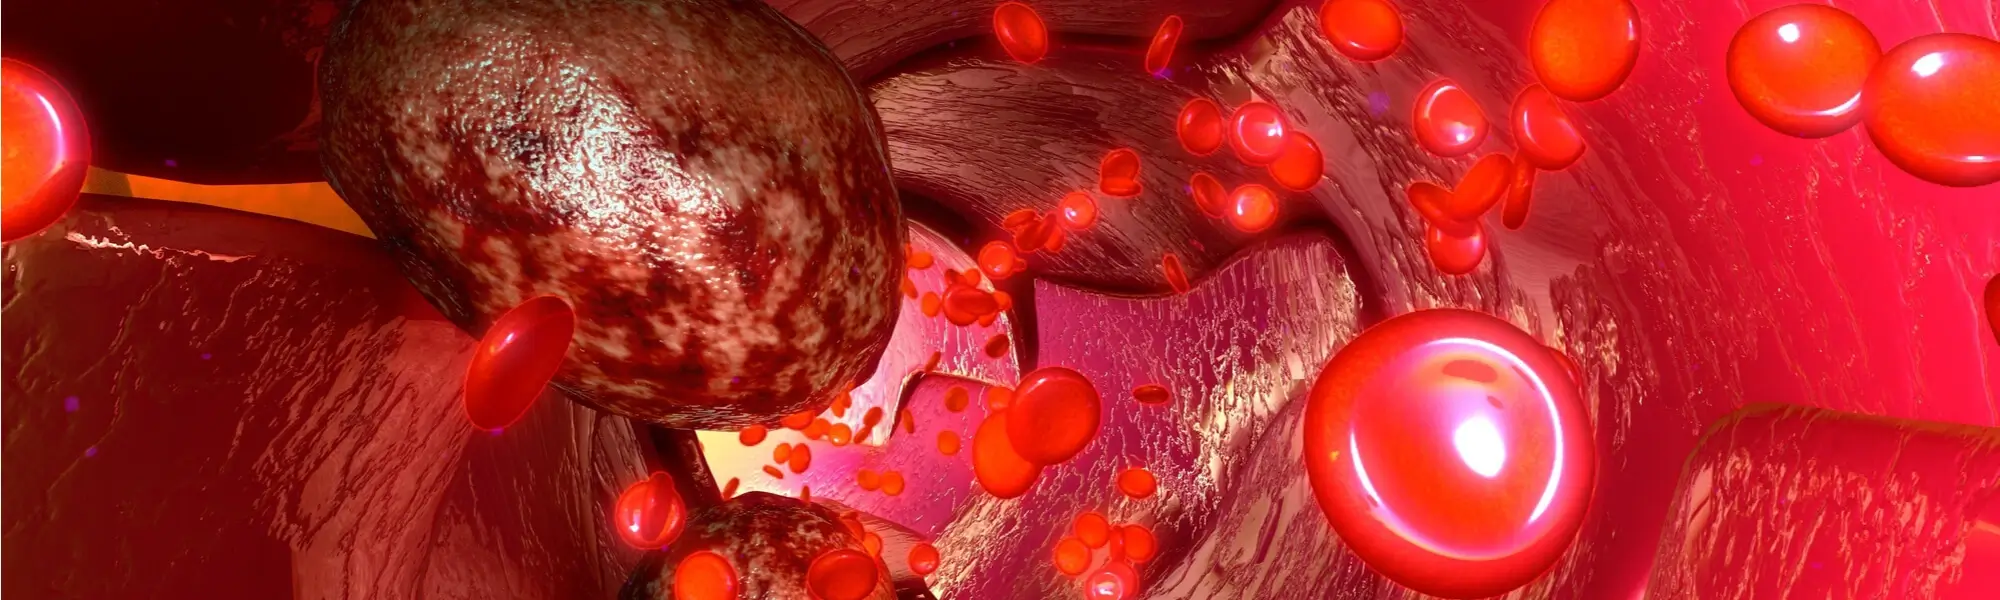 Jakie badanie krwi wykrywa raka? Test krwi na krążące komórki nowotworowe CTC